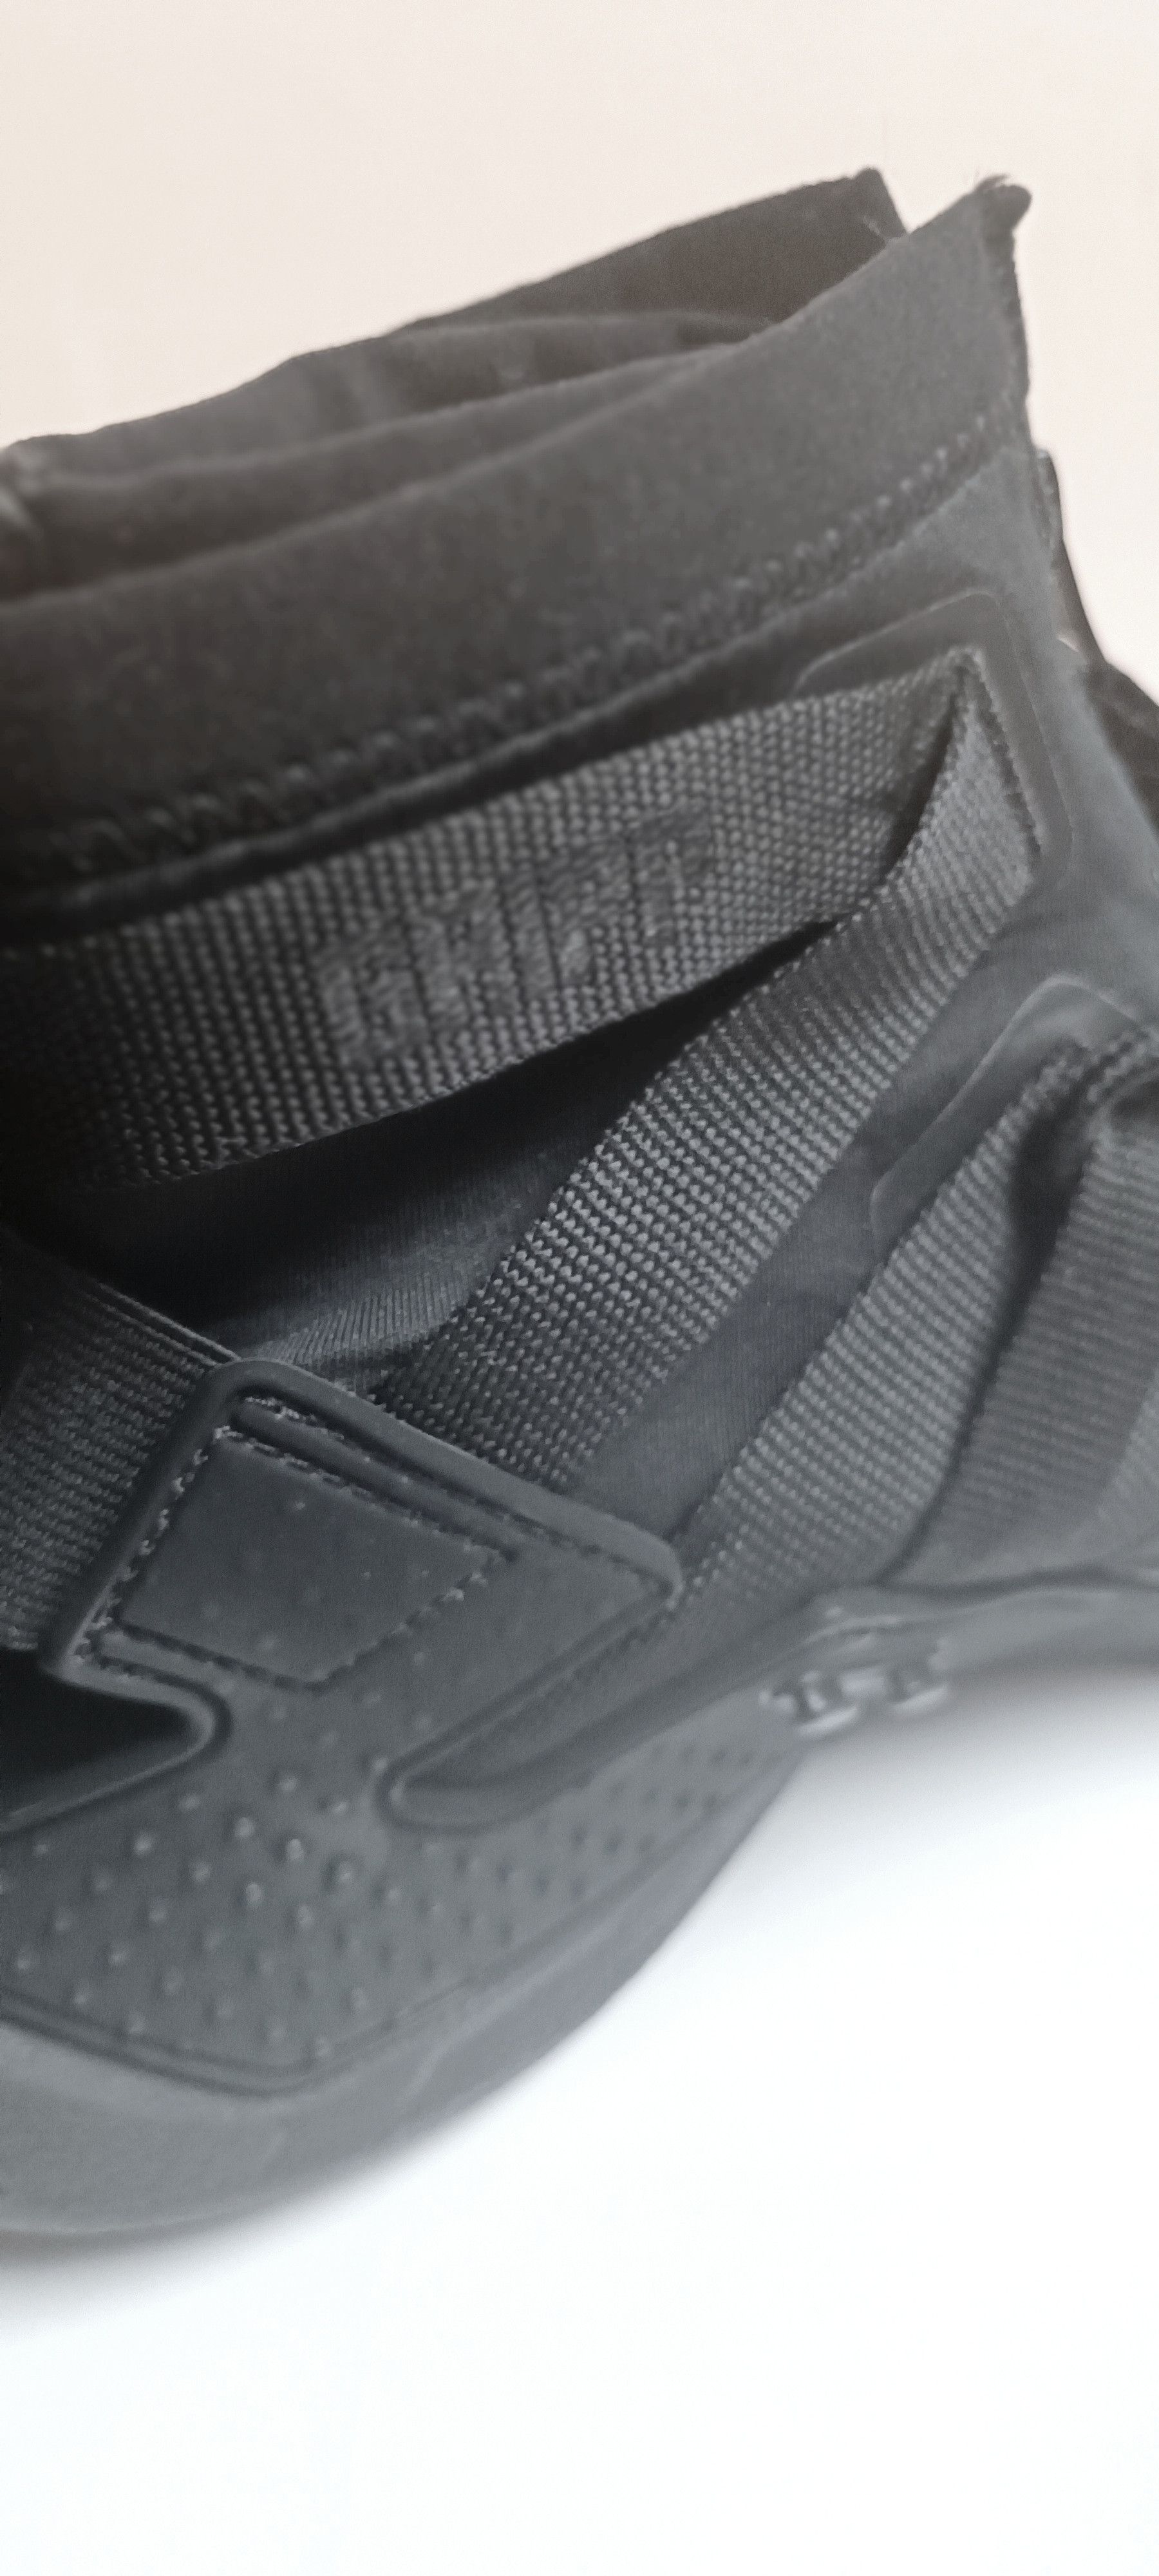 Nike Air Huarache Gripp 'Triple Black' (Rare) - 11